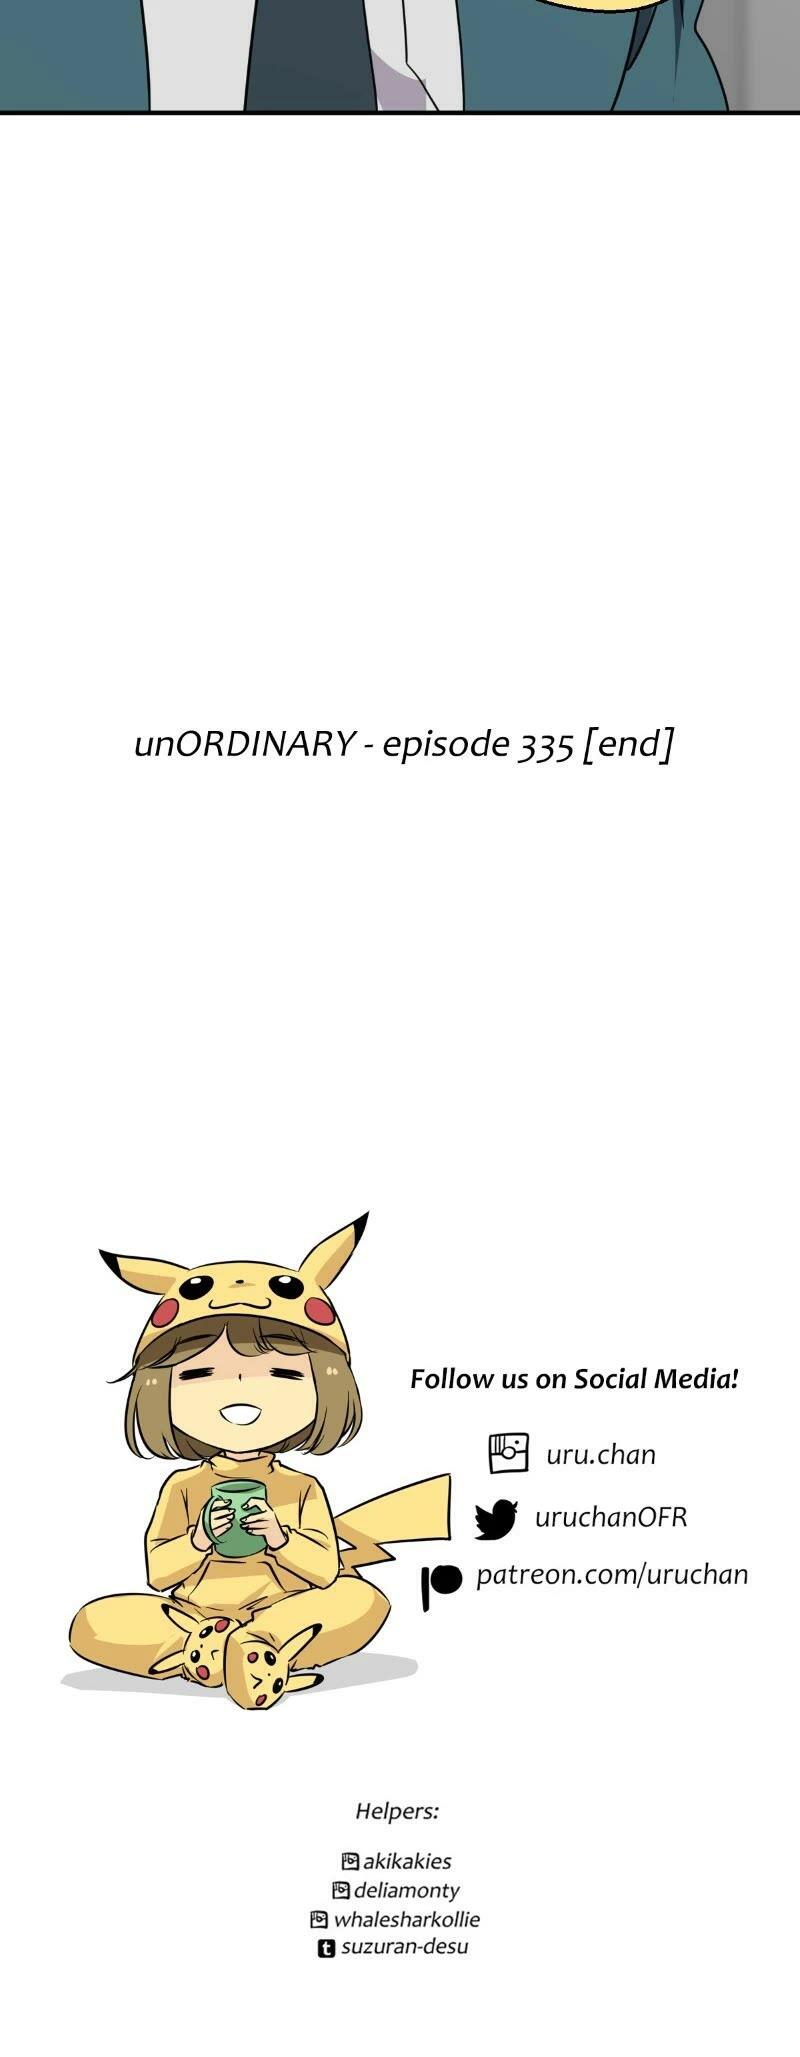 Unordinary Chapter 343: Episode 335 page 72 - unordinary-manga